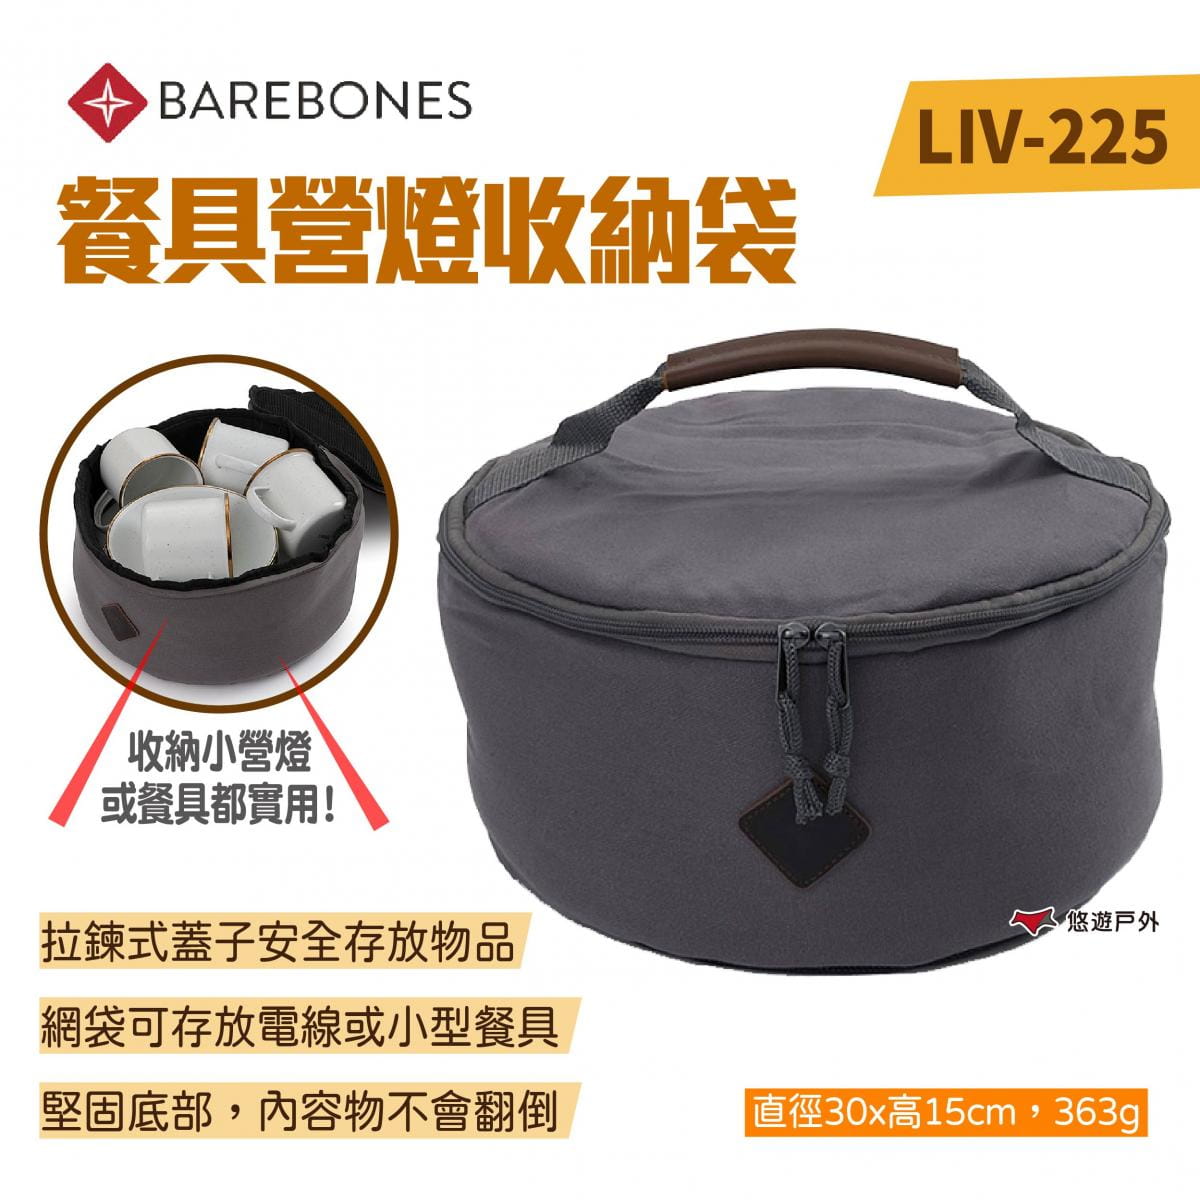 【Barebones】餐具營燈收納袋 LIV-225 (悠遊戶外) 0